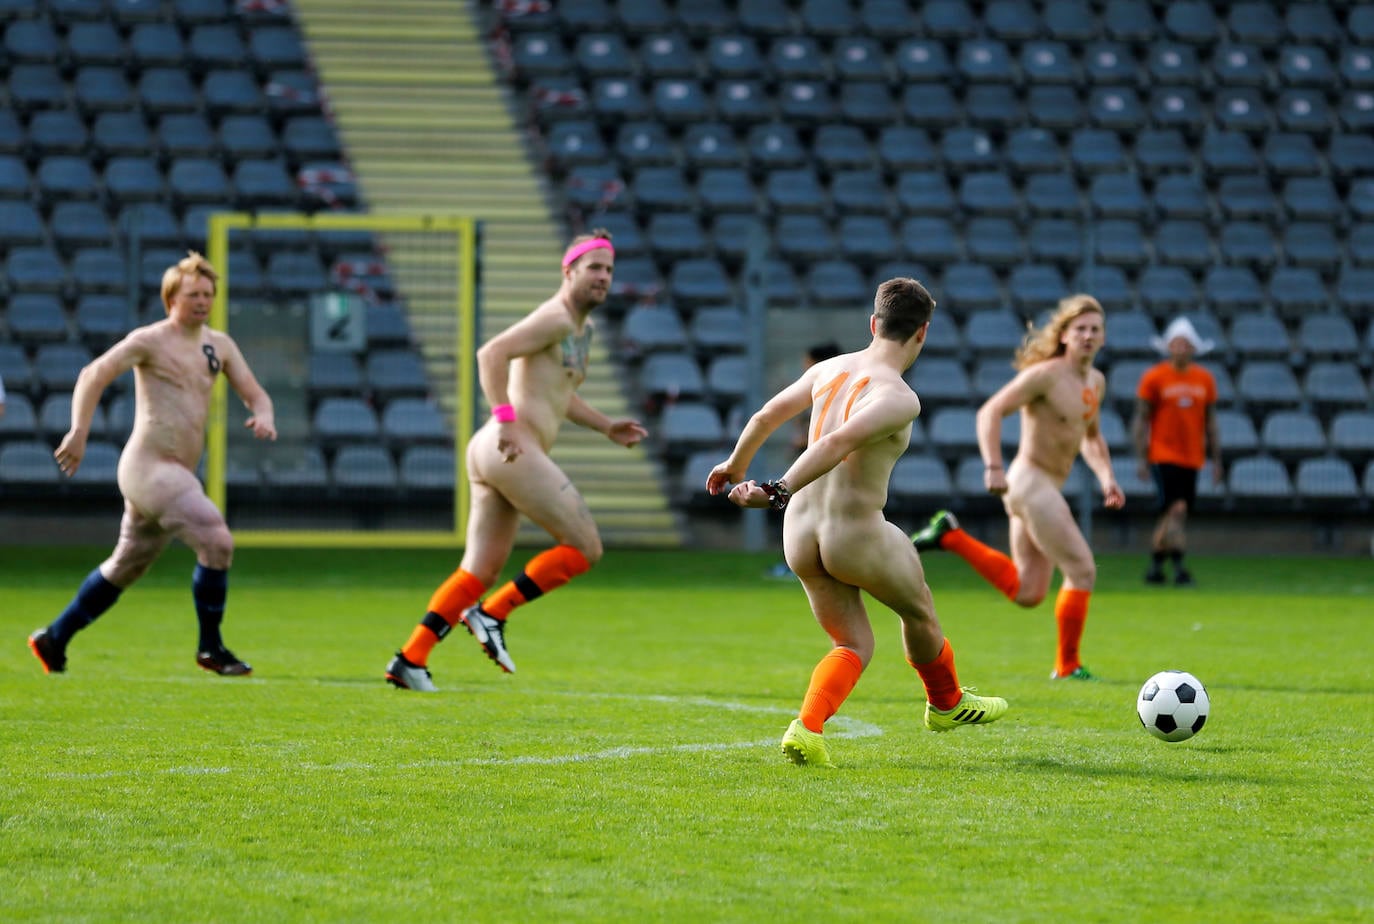 играть с голыми женщинами в футбол фото 6